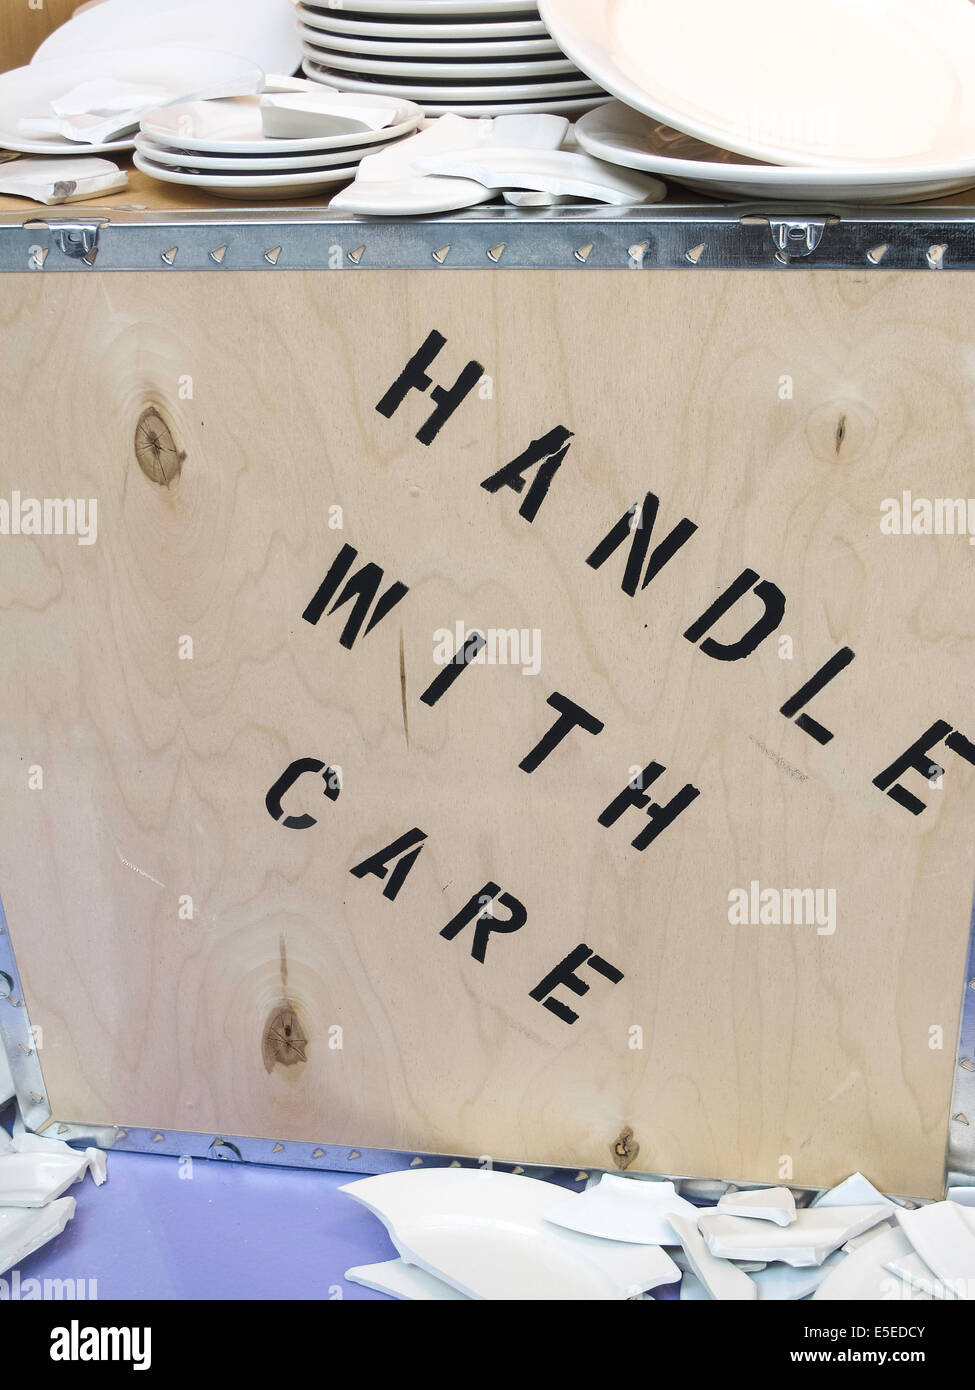 Stilleben, Geschirr zerbrochen und Kiste mit der Aufschrift "Handle with Care", USA Stockfoto